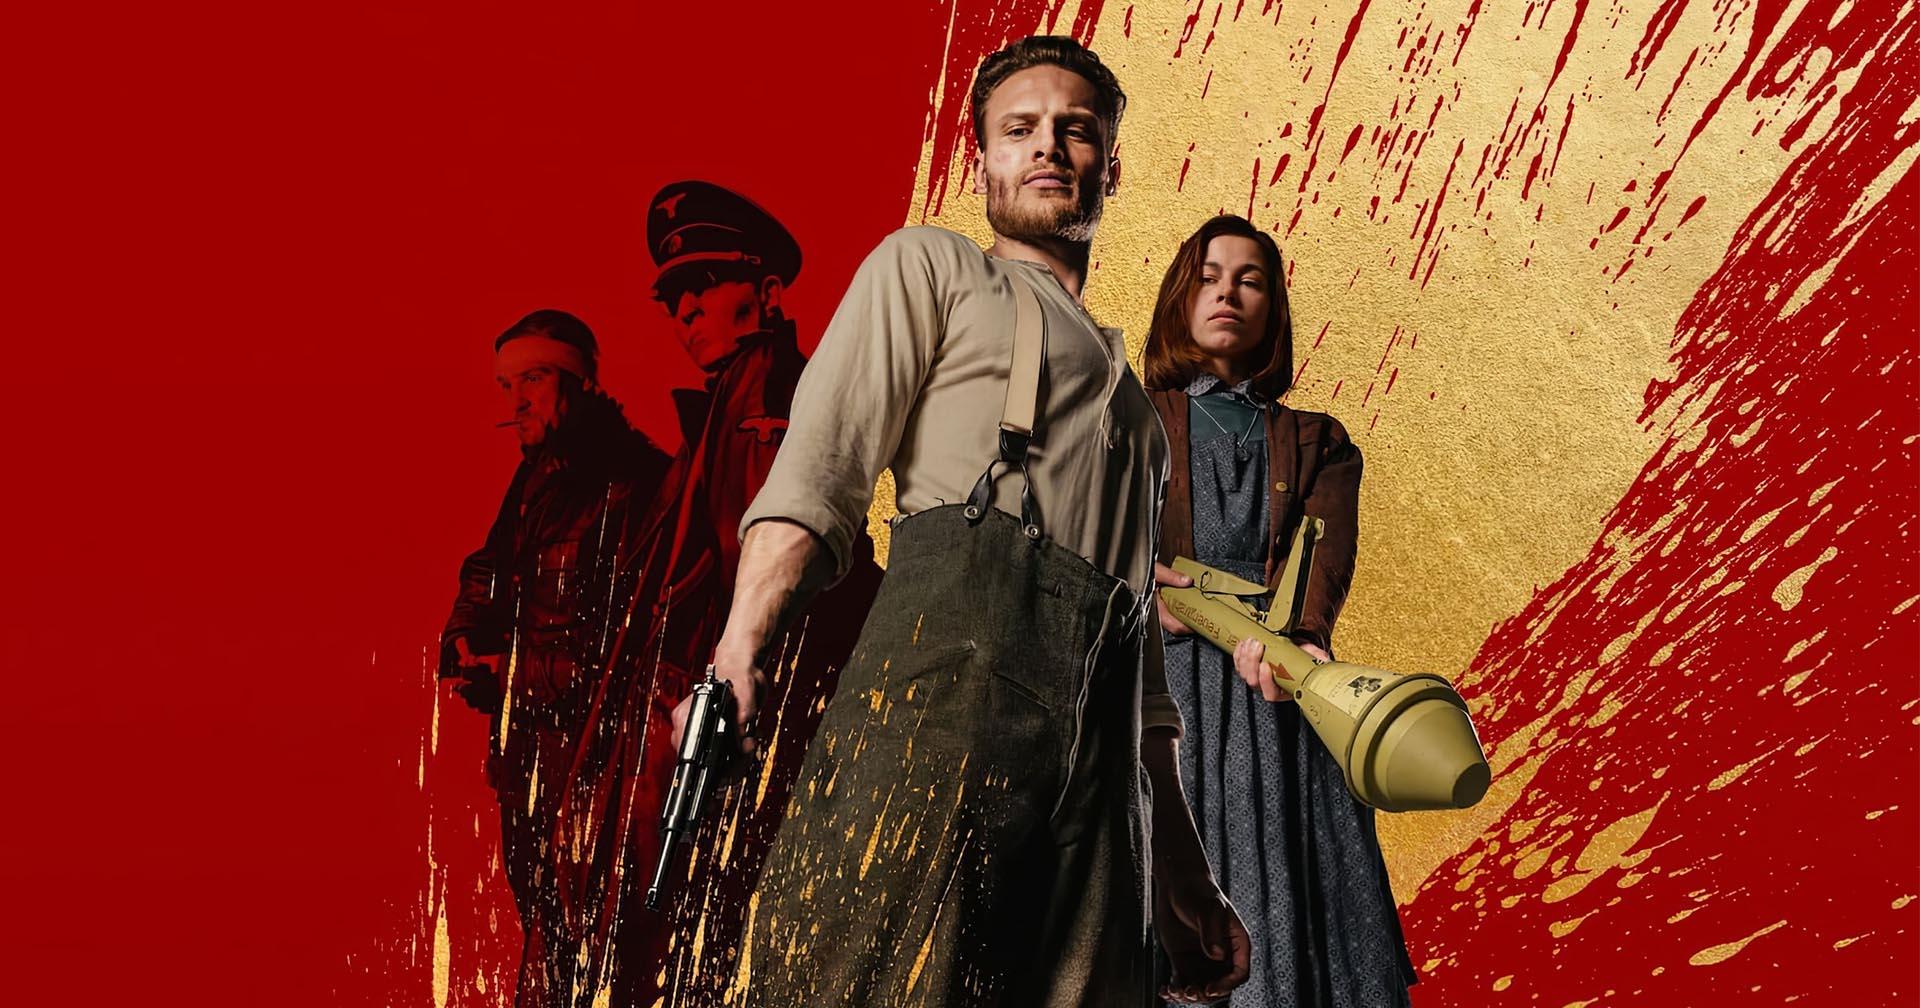 Blood & Gold : หนังสงครามโลกครั้งที่ 2 โหด ดุ เลือดสาด โดยไม่ต้องมีฉากรบ